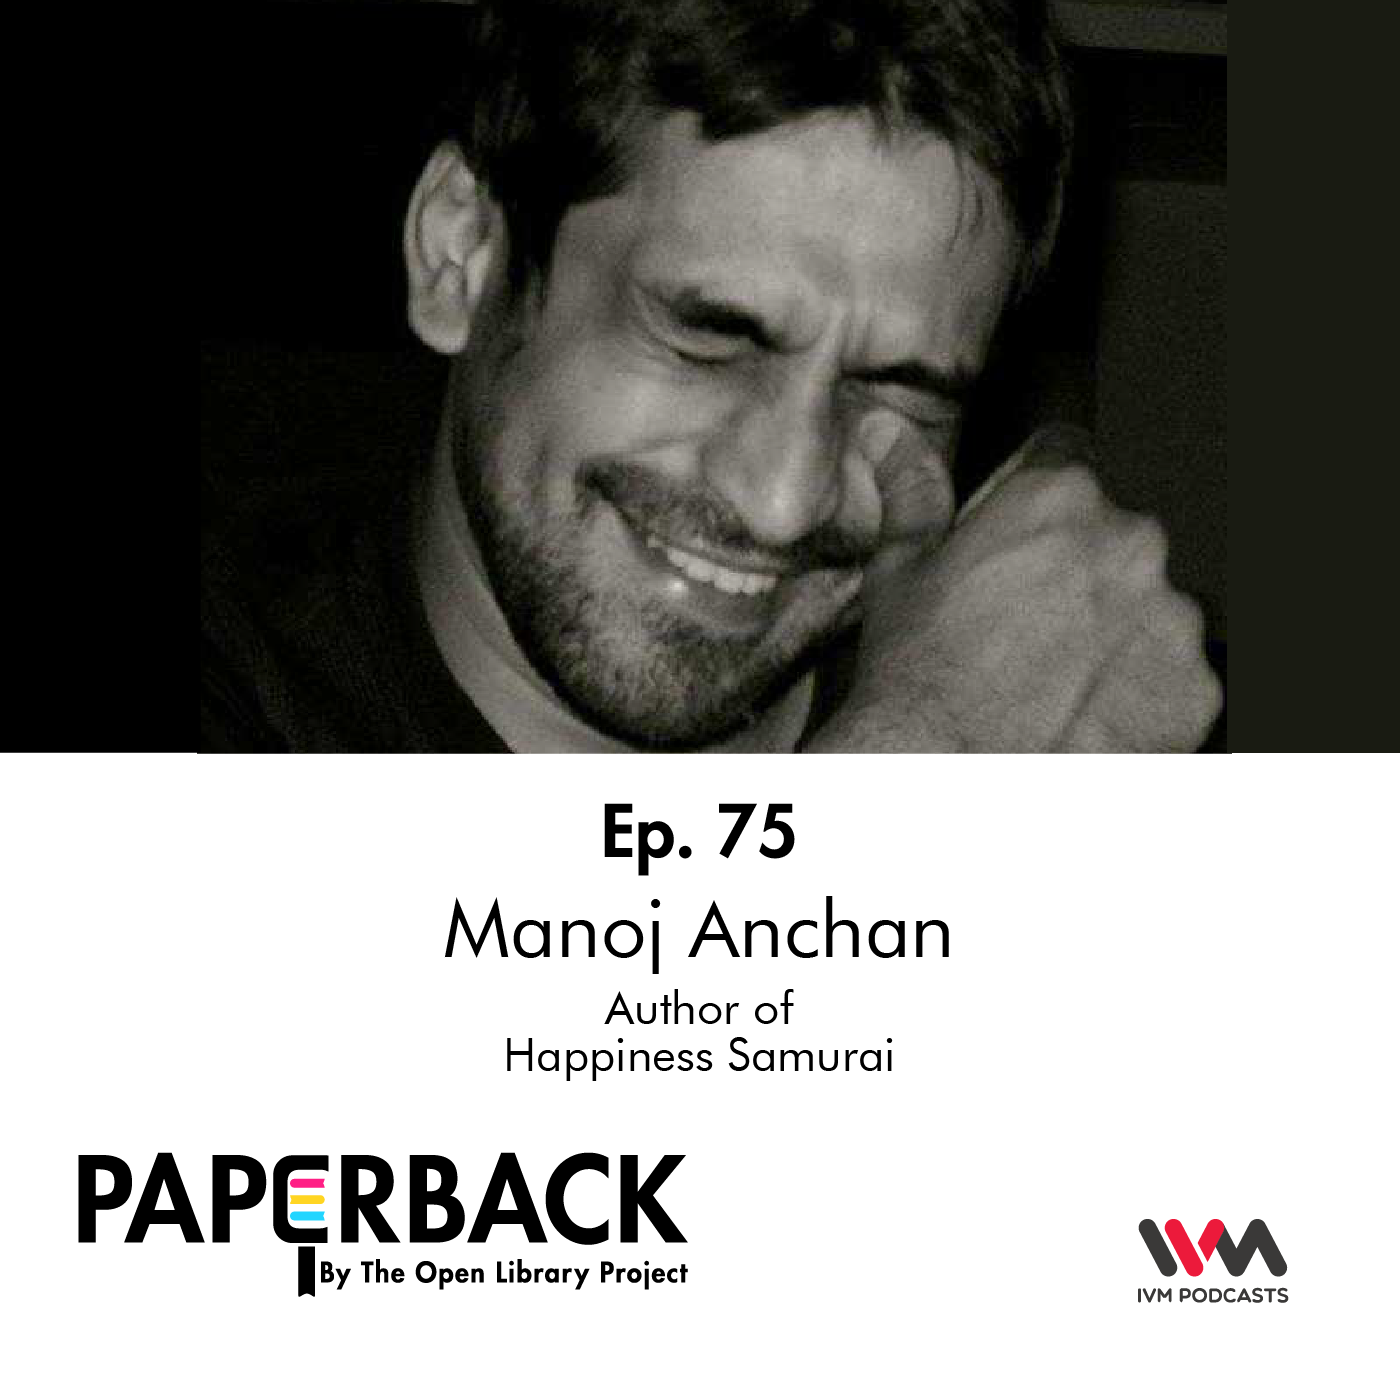 Ep. 75: Manoj Anchan